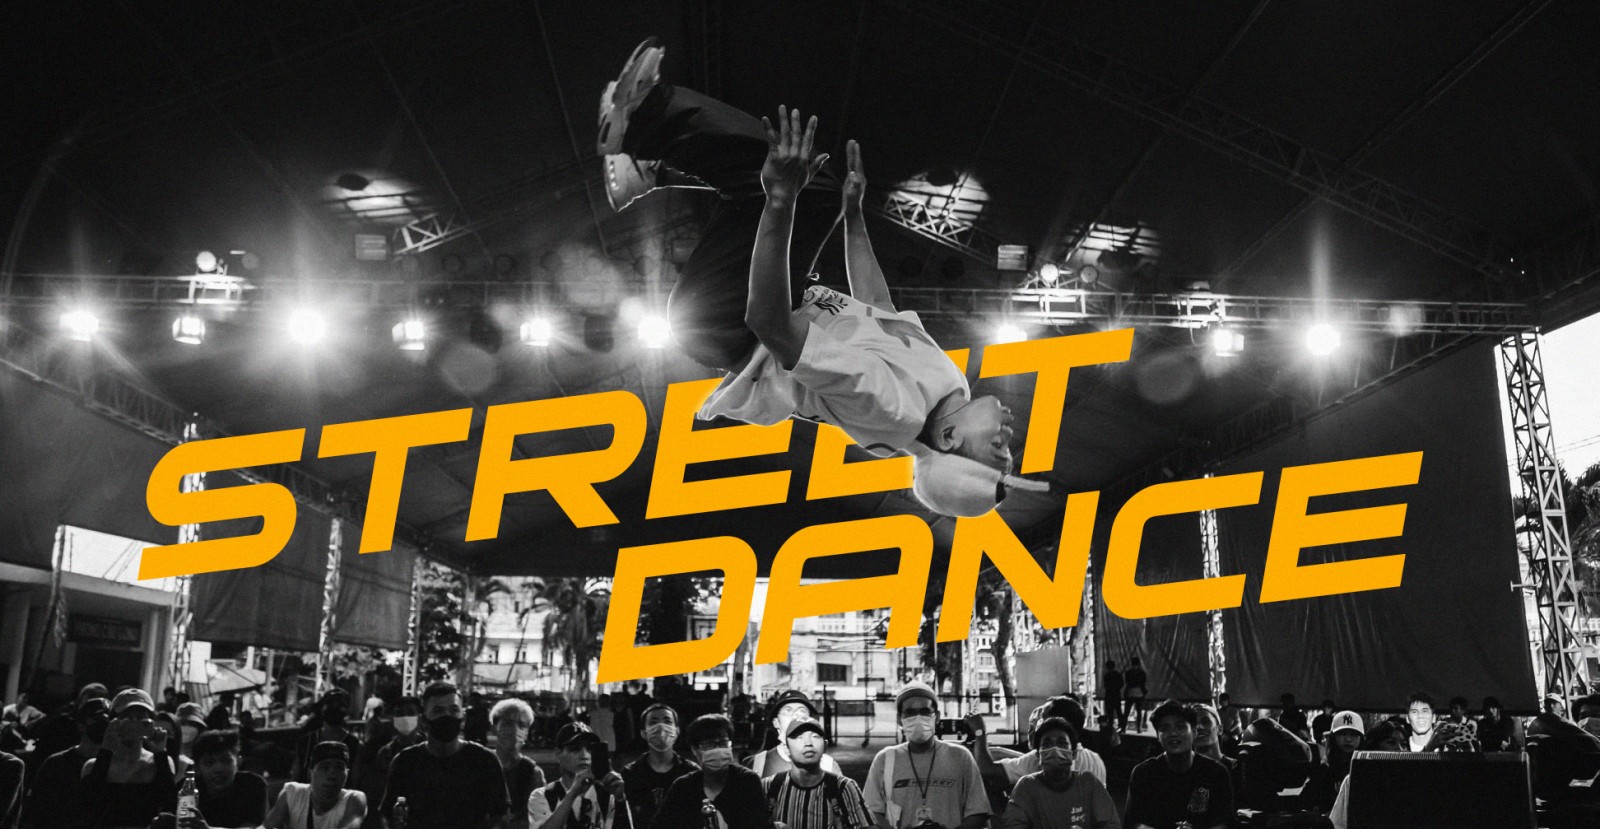 Năm 2022 - Sự trỗi dậy của những điệu nhảy đường phố